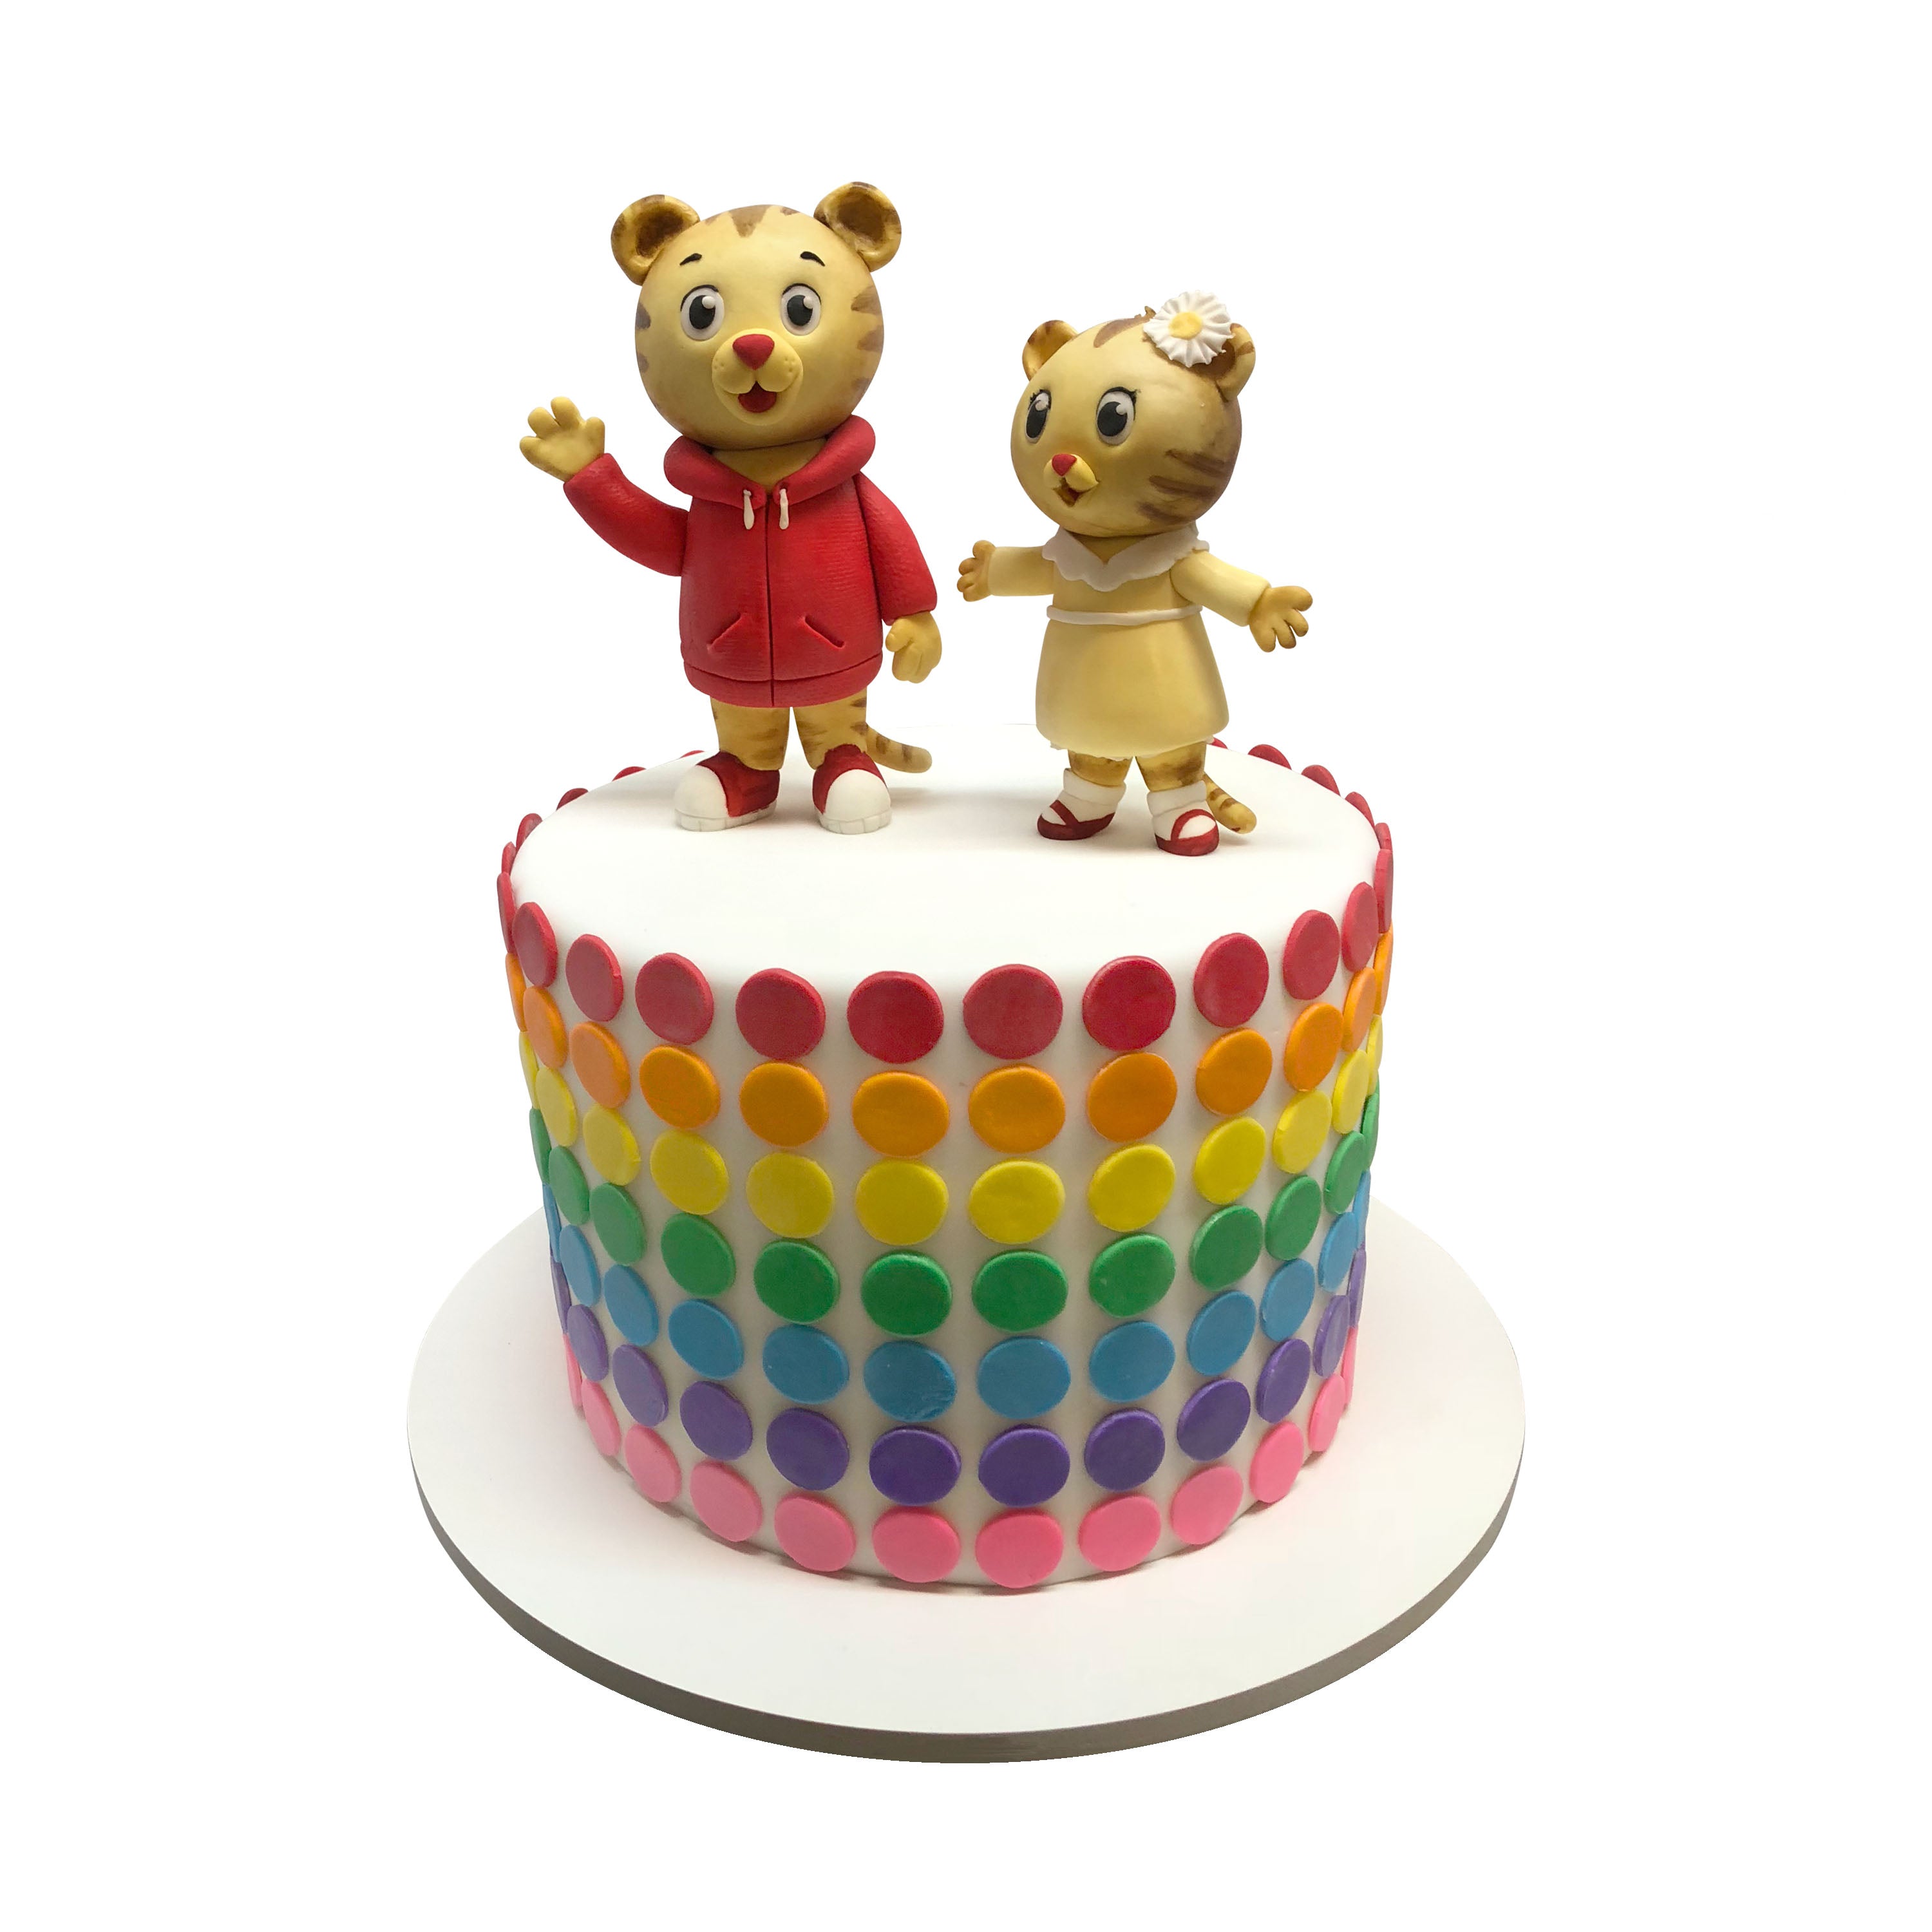 1901) Tiger Shaped Birthday Cake - ABC Cake Shop & Bakery